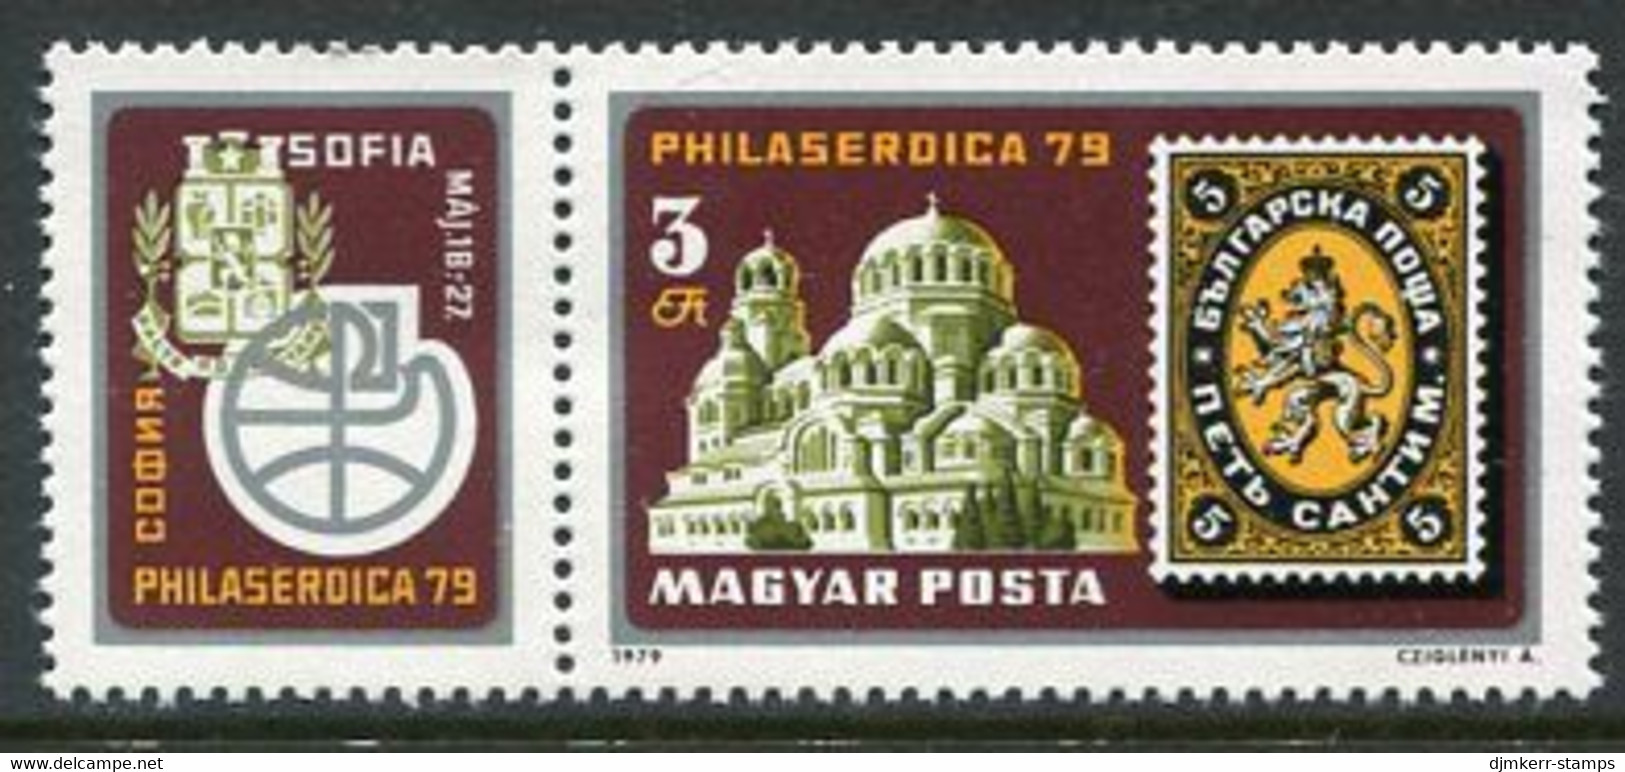 HUNGARY 1979 PHILASERDICA Stamp Exhibition MNH / **.  Michel 3342 - Ungebraucht